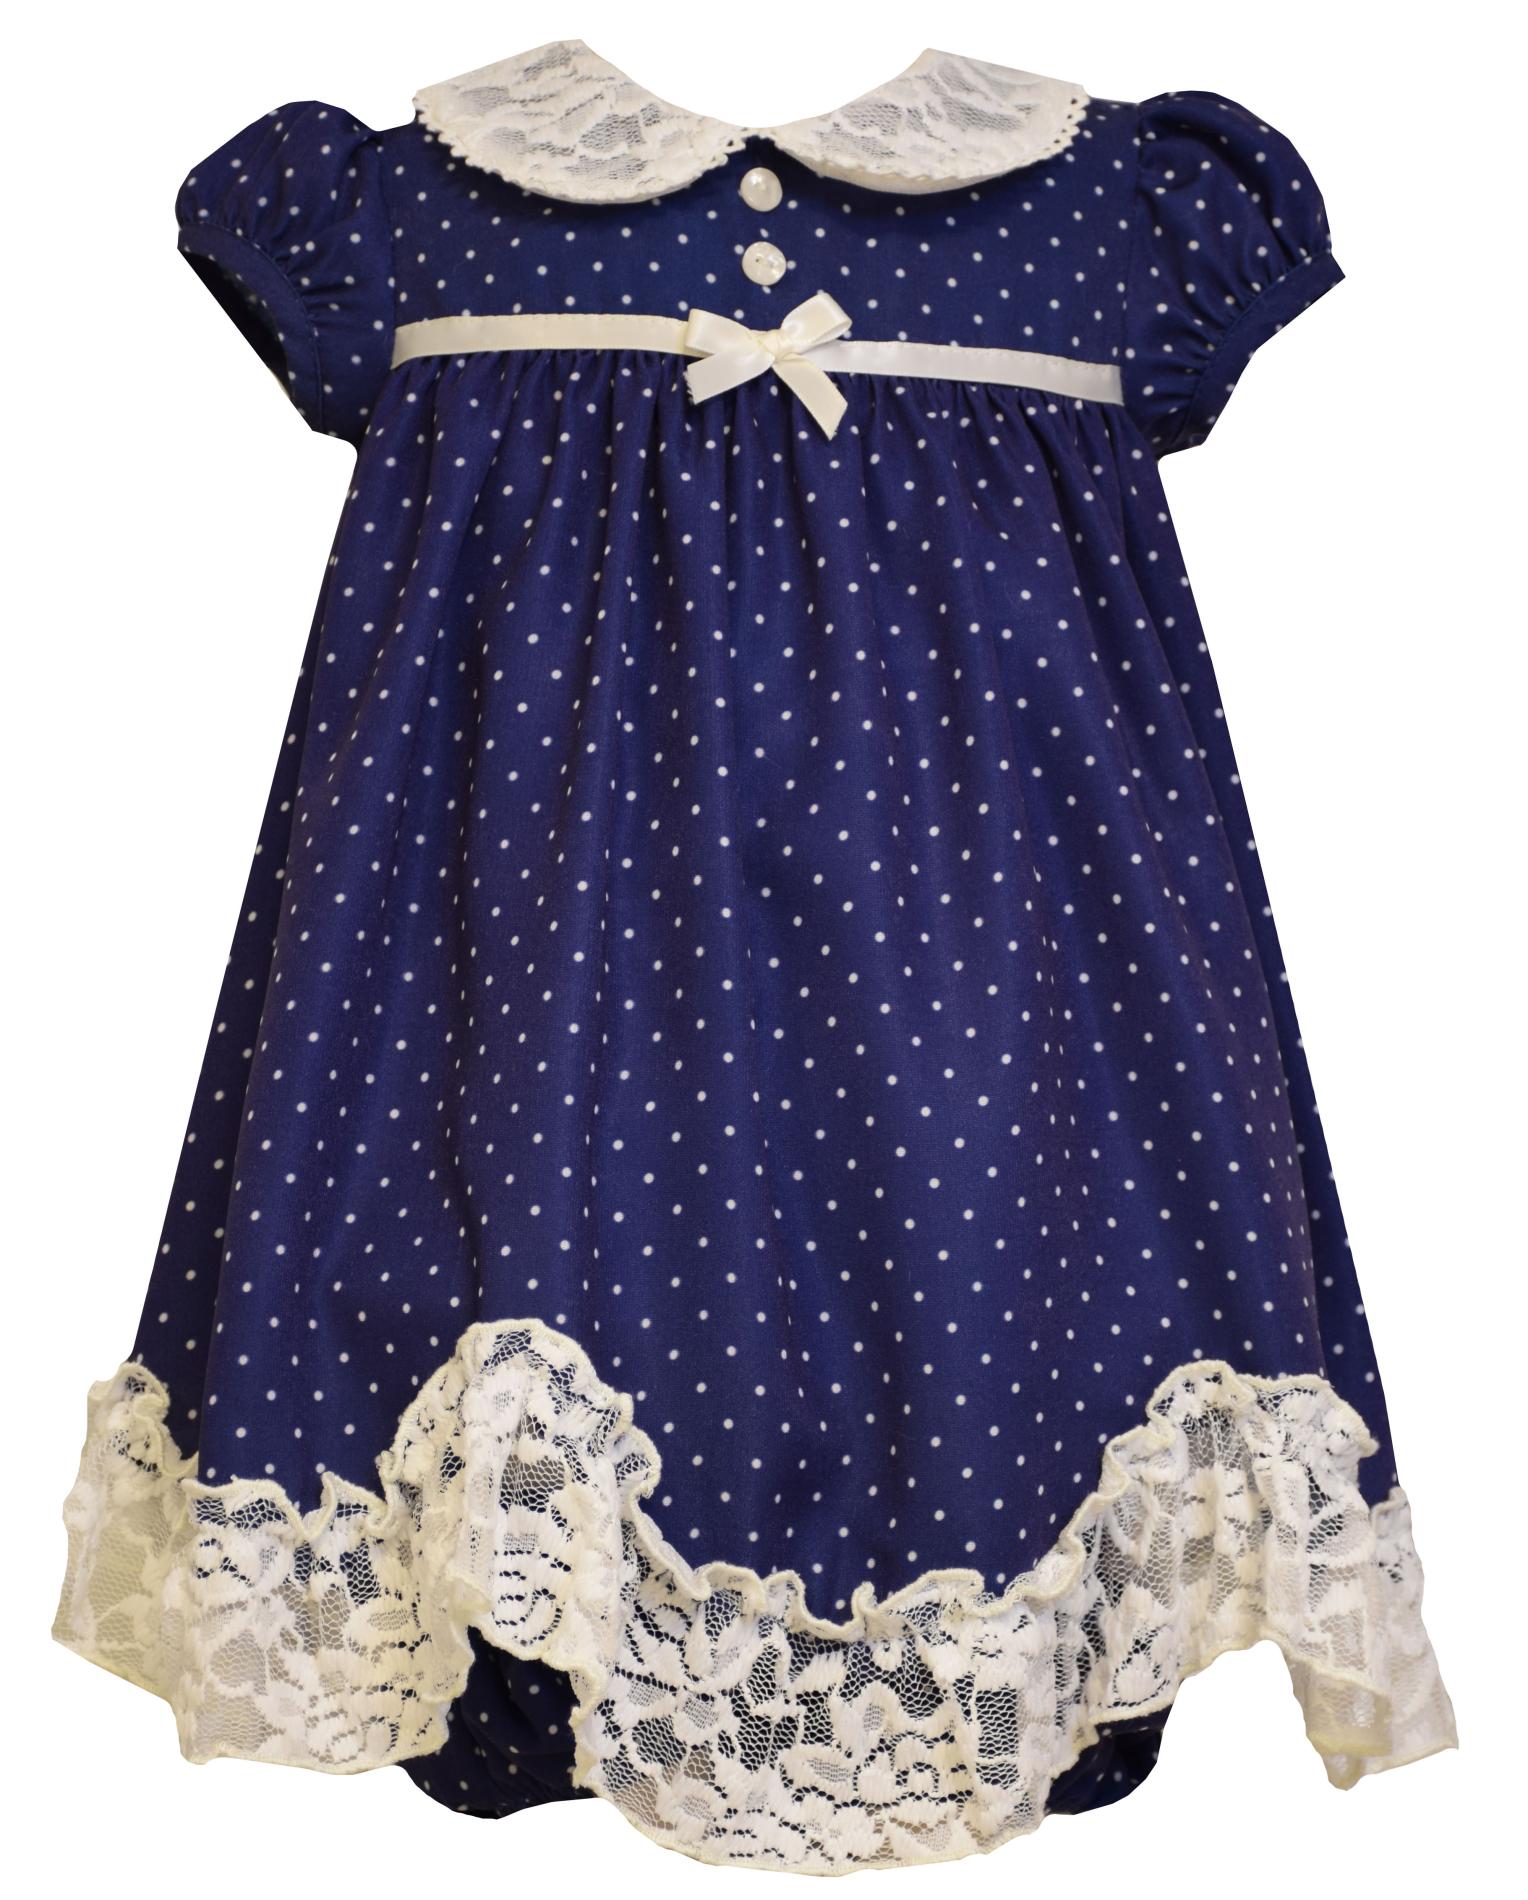 Ashley Ann Infant & Toddler Girl's Empire Waist Dress - Polka Dot